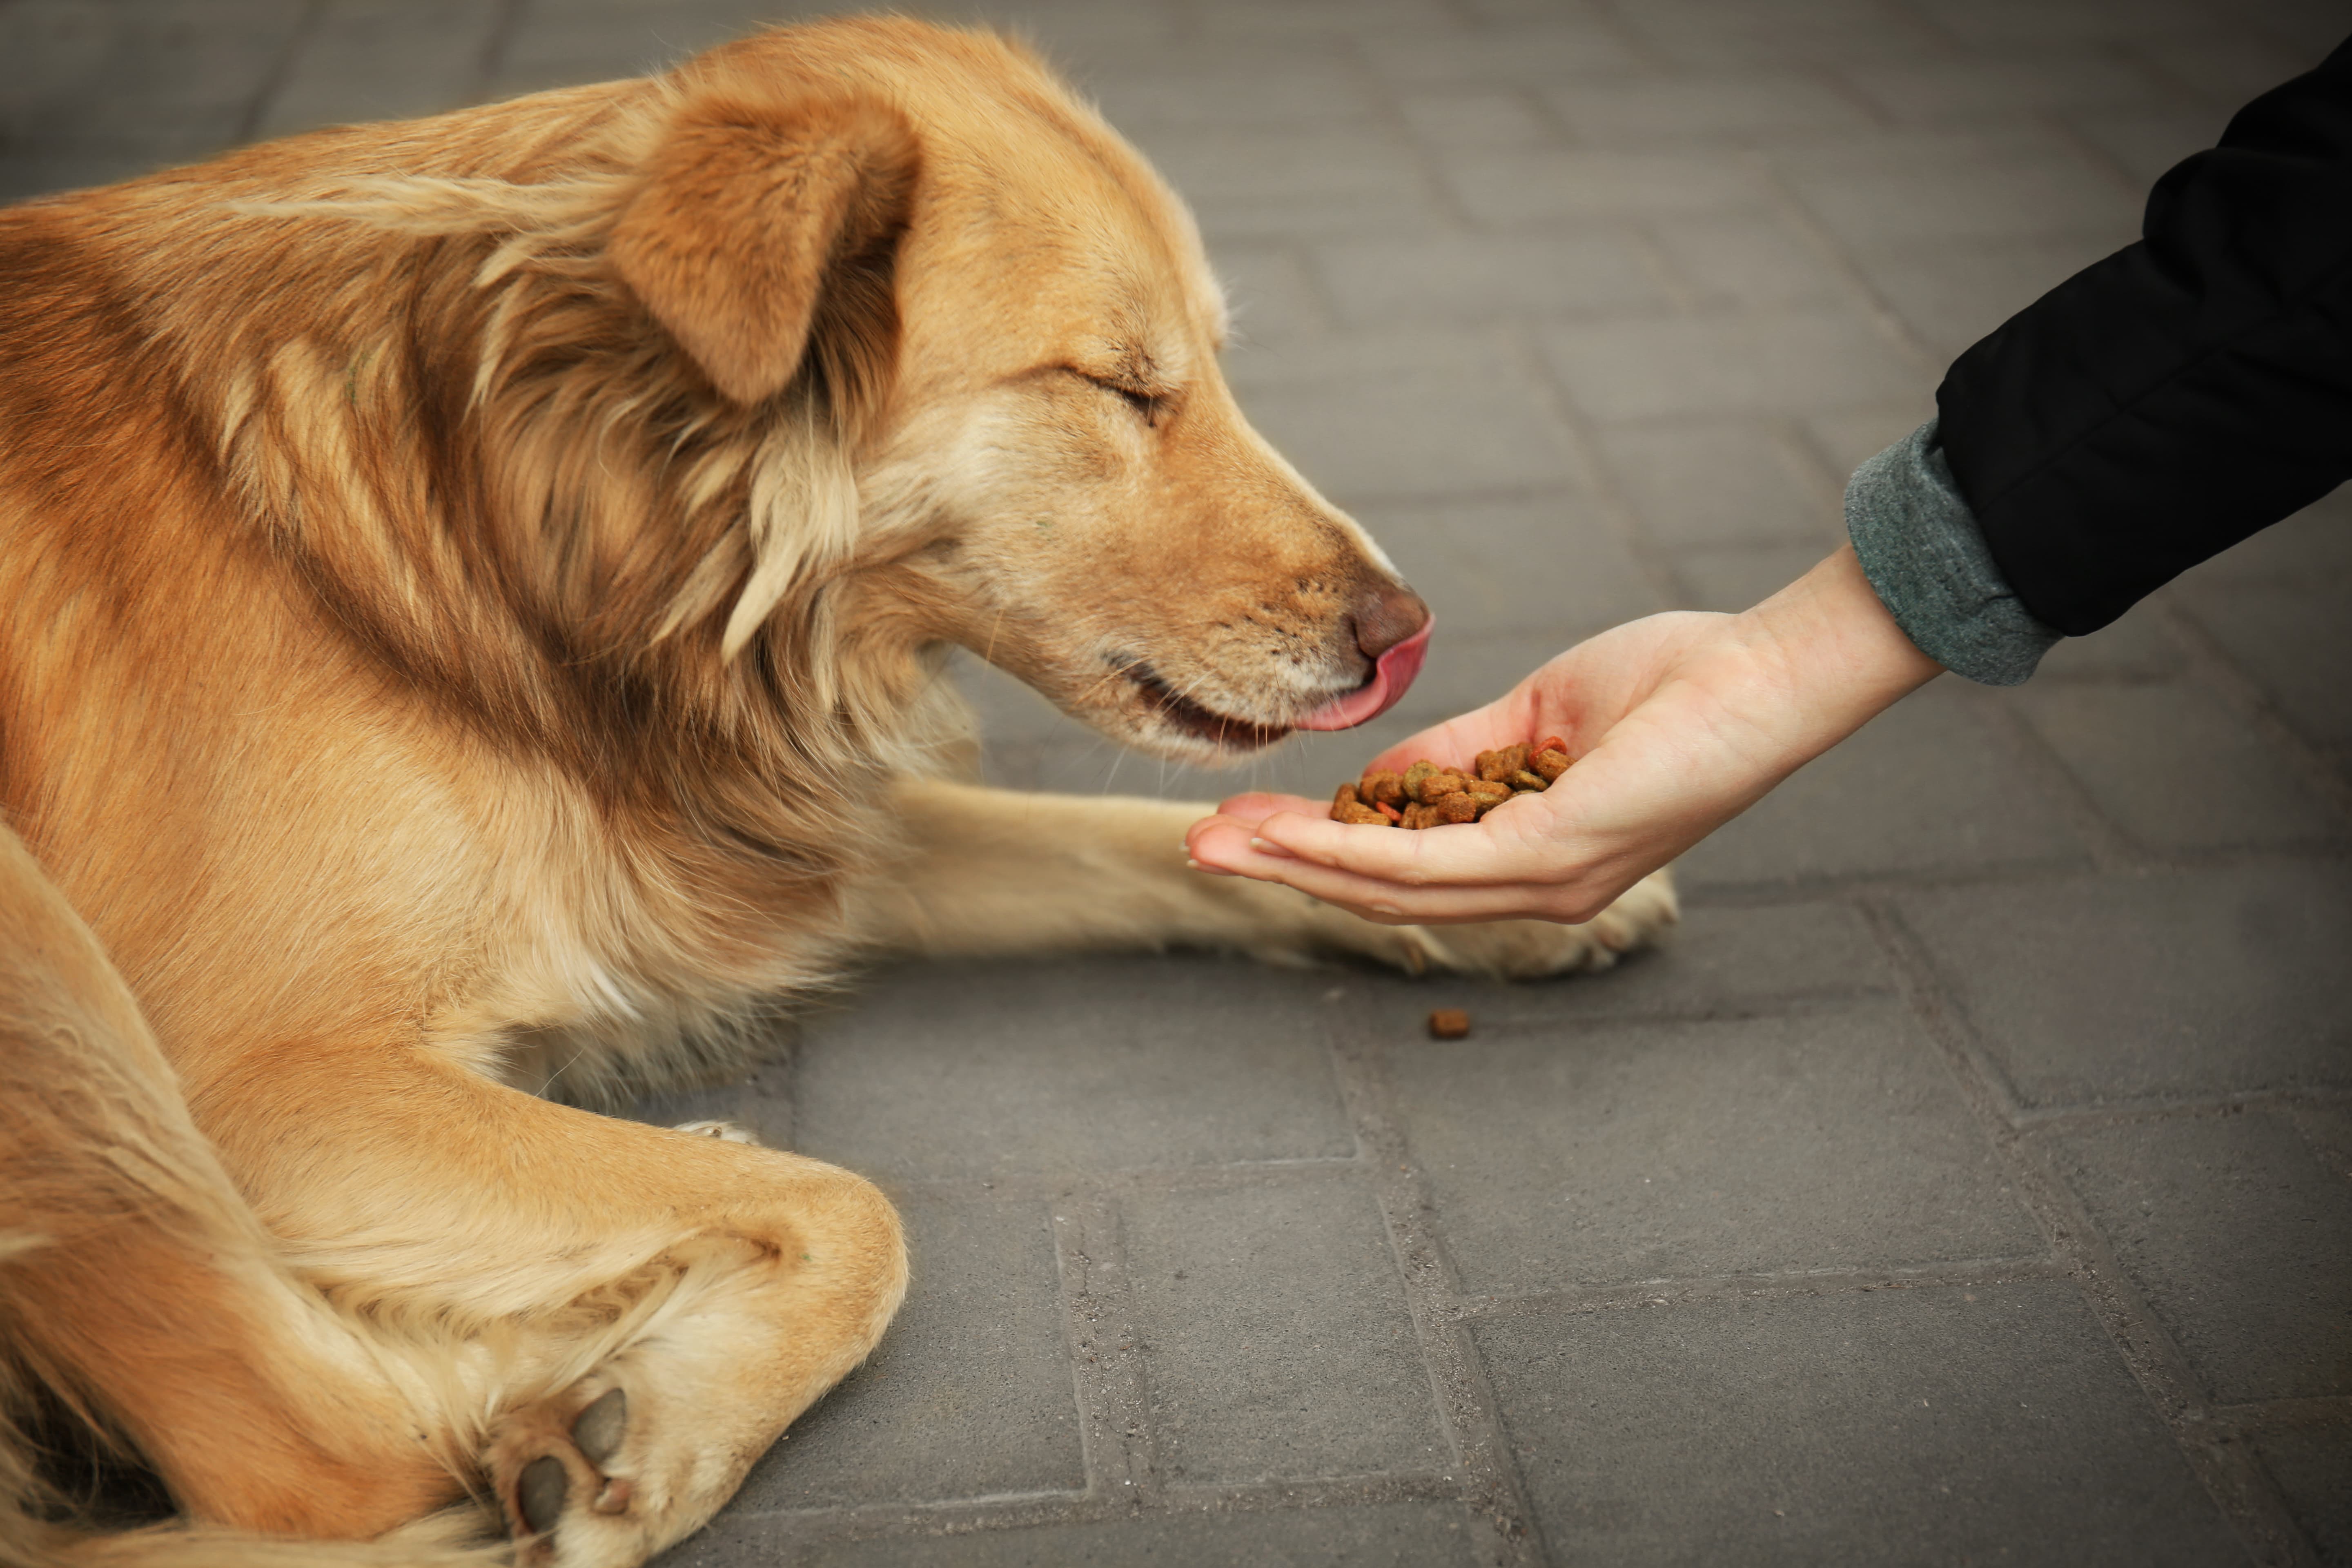  Imagem de um cachorro caramelo deitado no chão com os olhos fechados e a língua para fora, enquanto uma pessoa à sua frente oferece ração na mão.